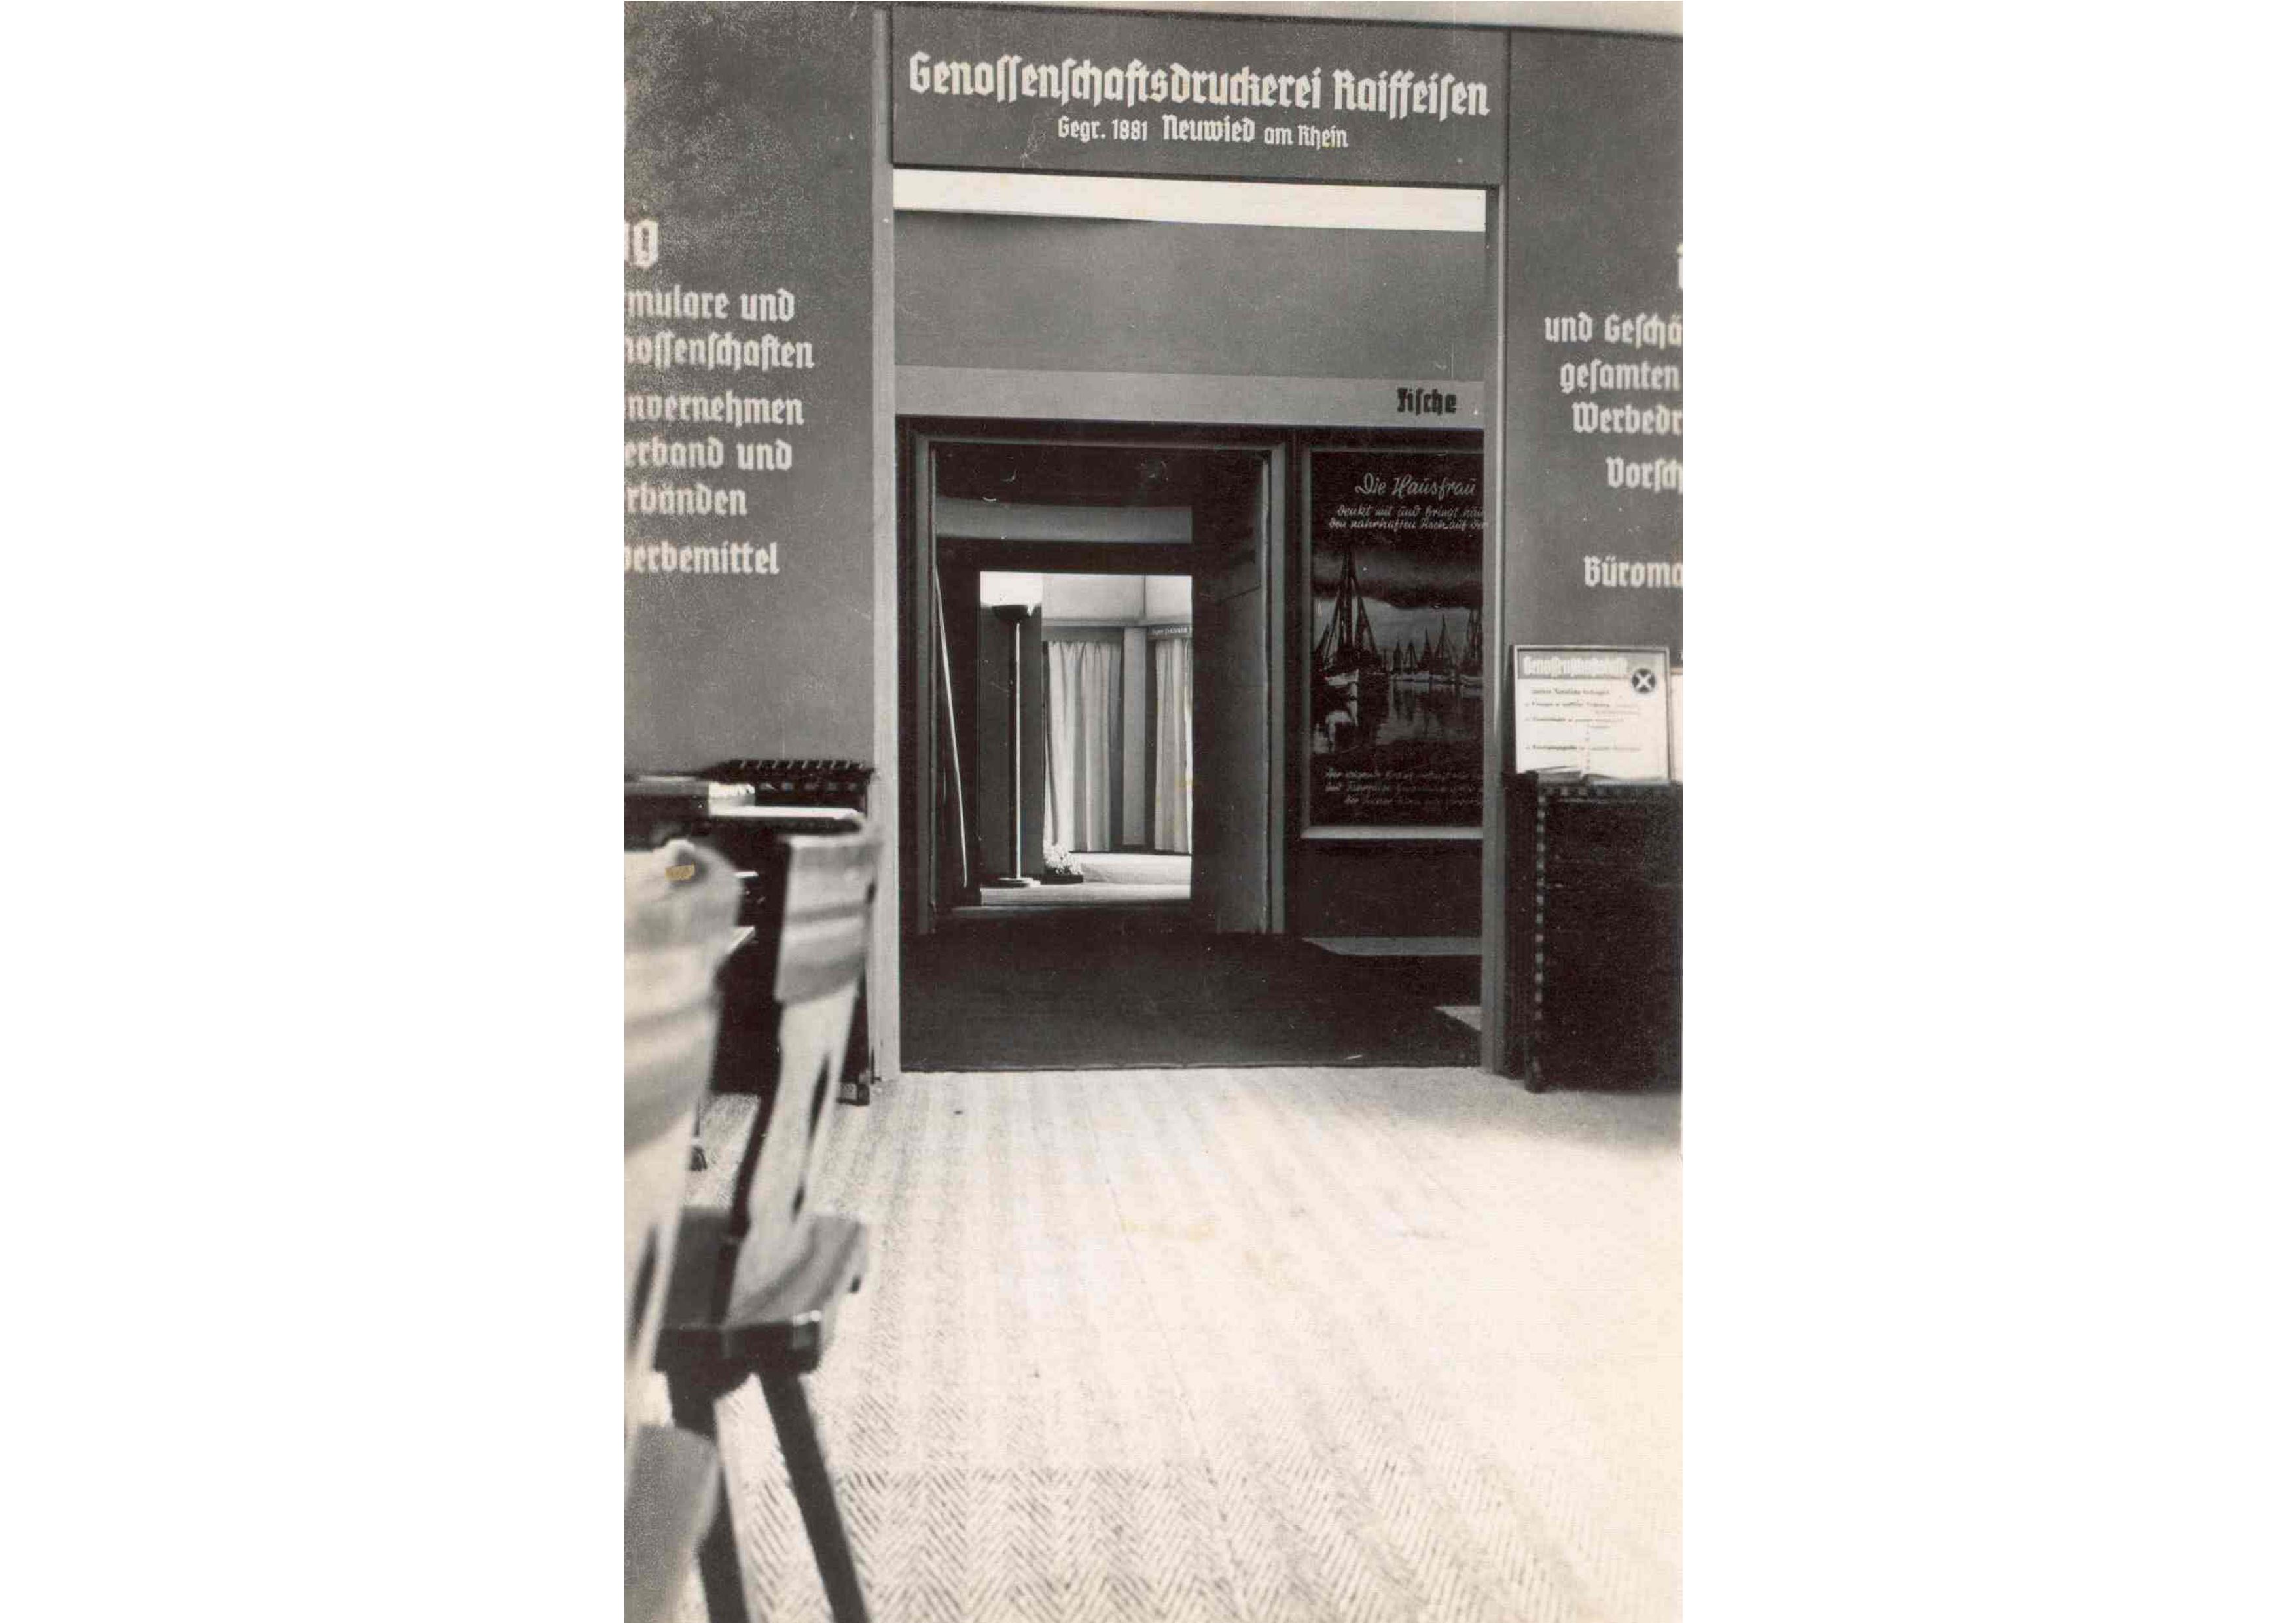 1936: Haus der Genossenschaften in Berlin (Ausstellung in der Raiffeisendruckerei).